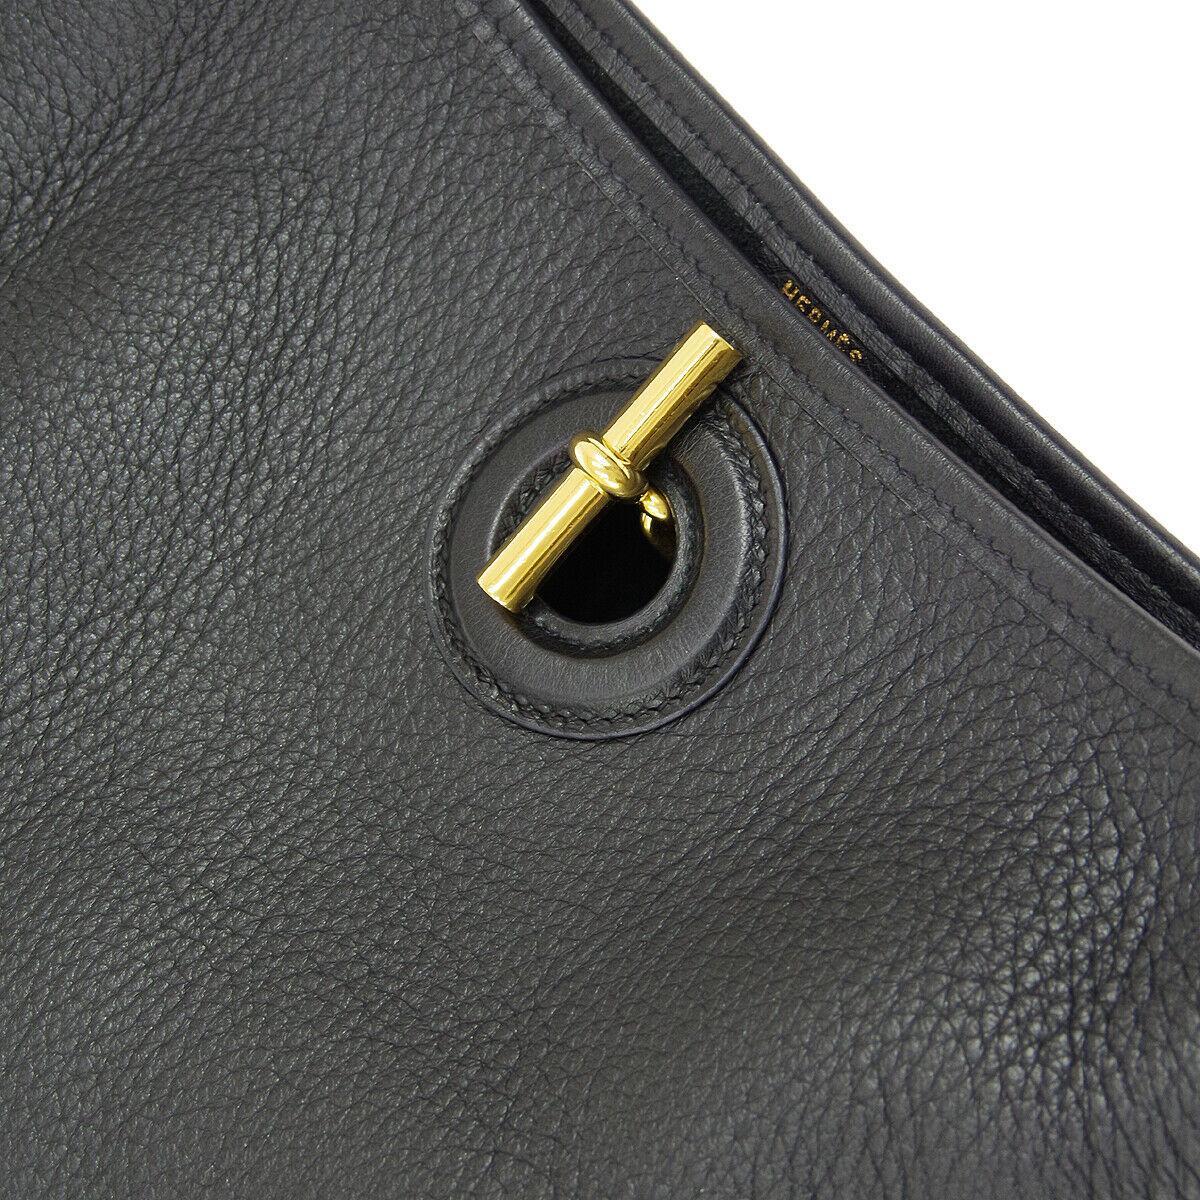 Hermes Black Leather Canvas Gold Toggle Carryall Shoulder Bag

Leather
Canvas
Gold tone hardware
Date code present
Made in France
Shoulder strap drop 19